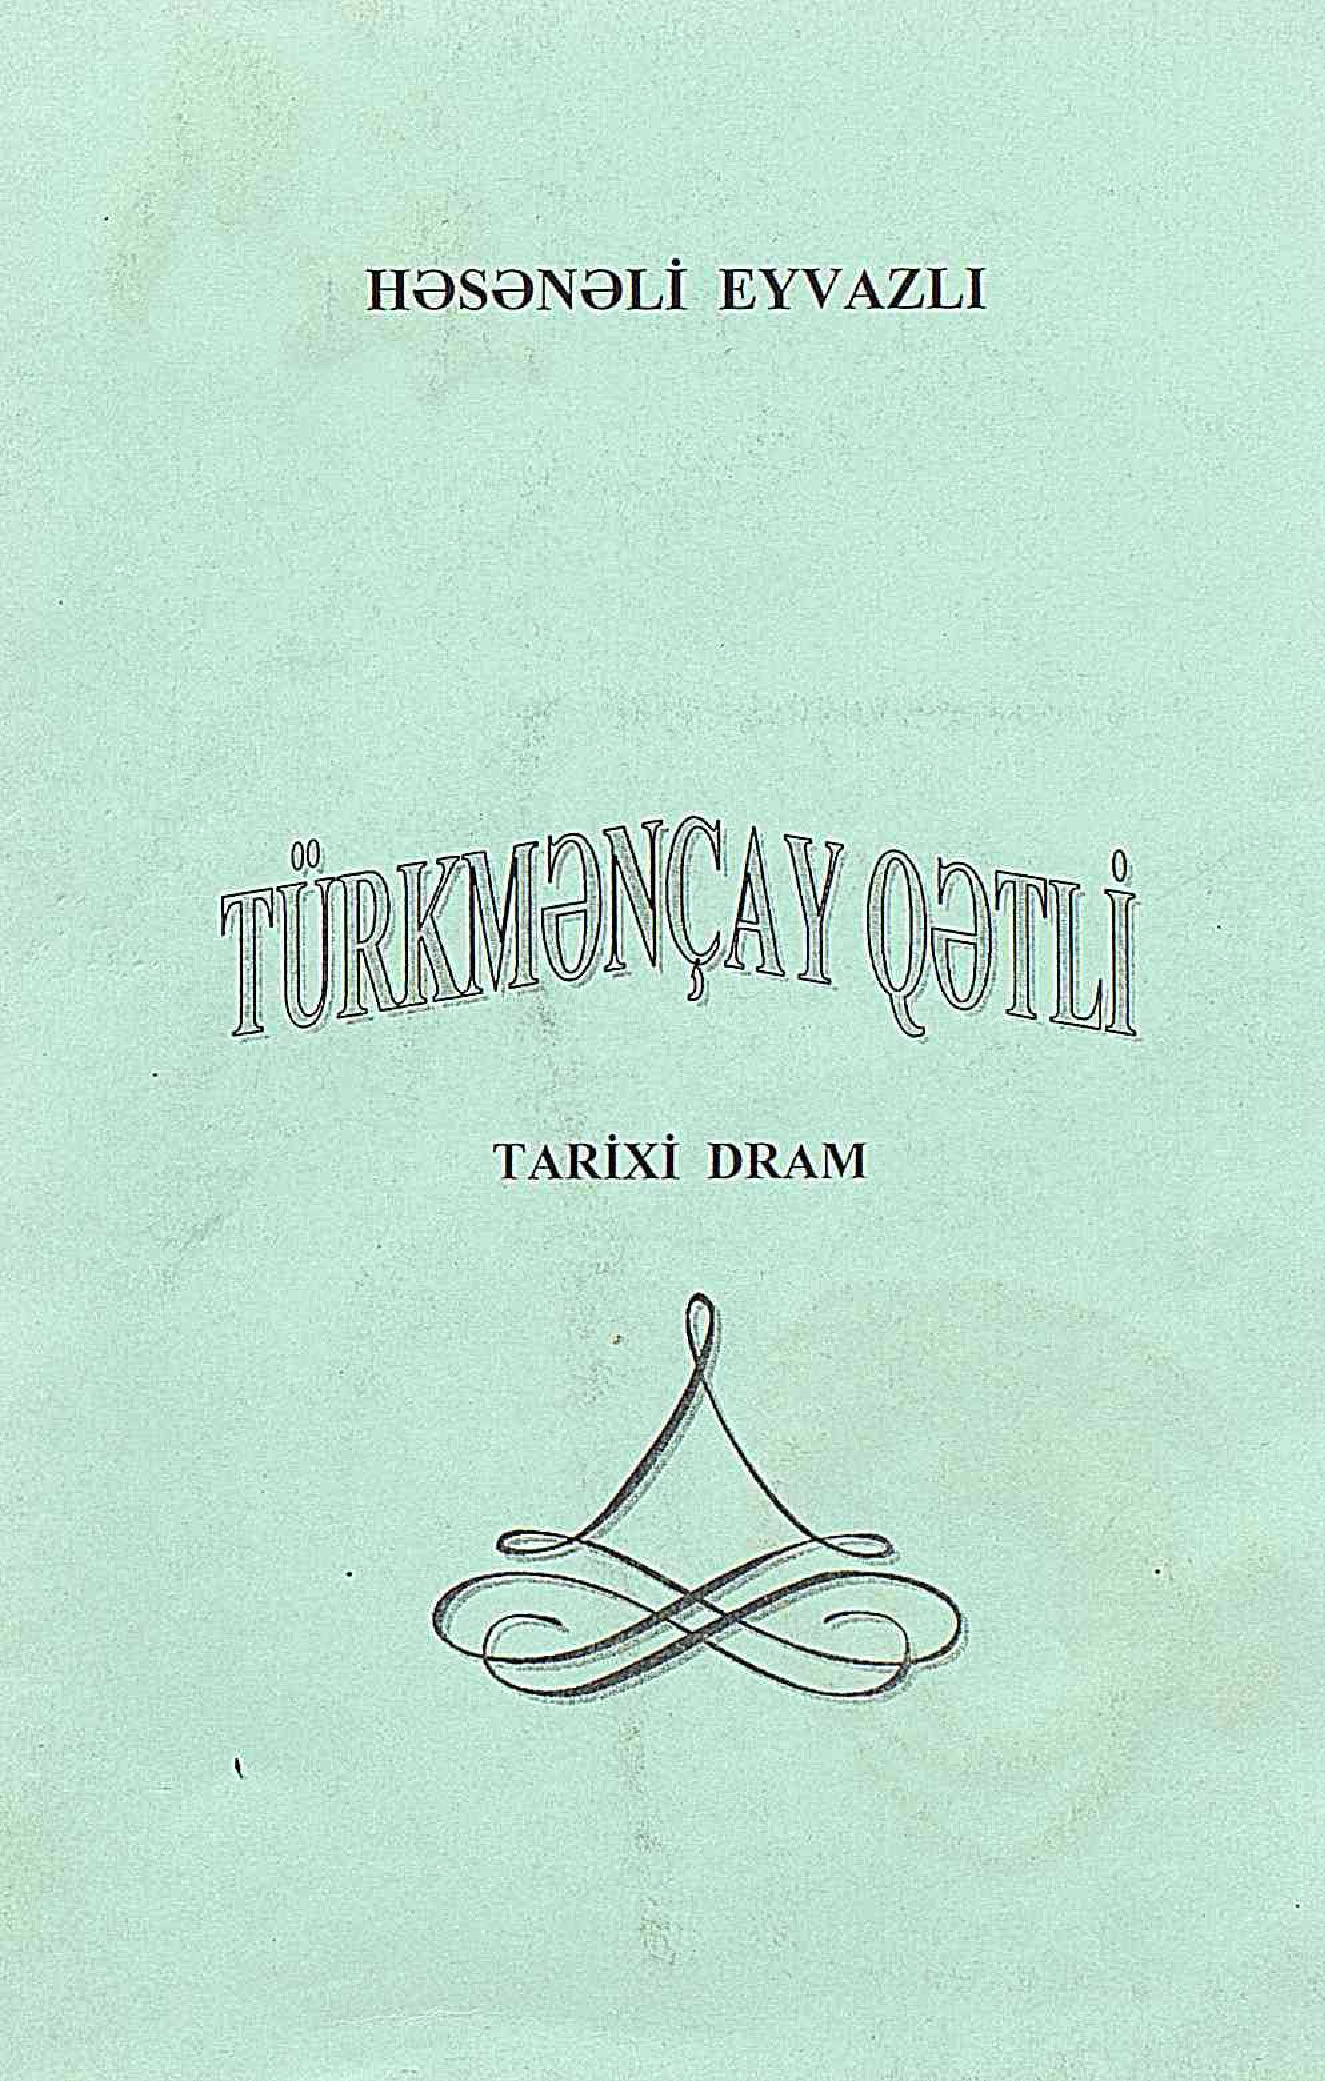 Türkmençay Qetli-Tarixi Dram-Hesenli Eyvazlı-2004-45s